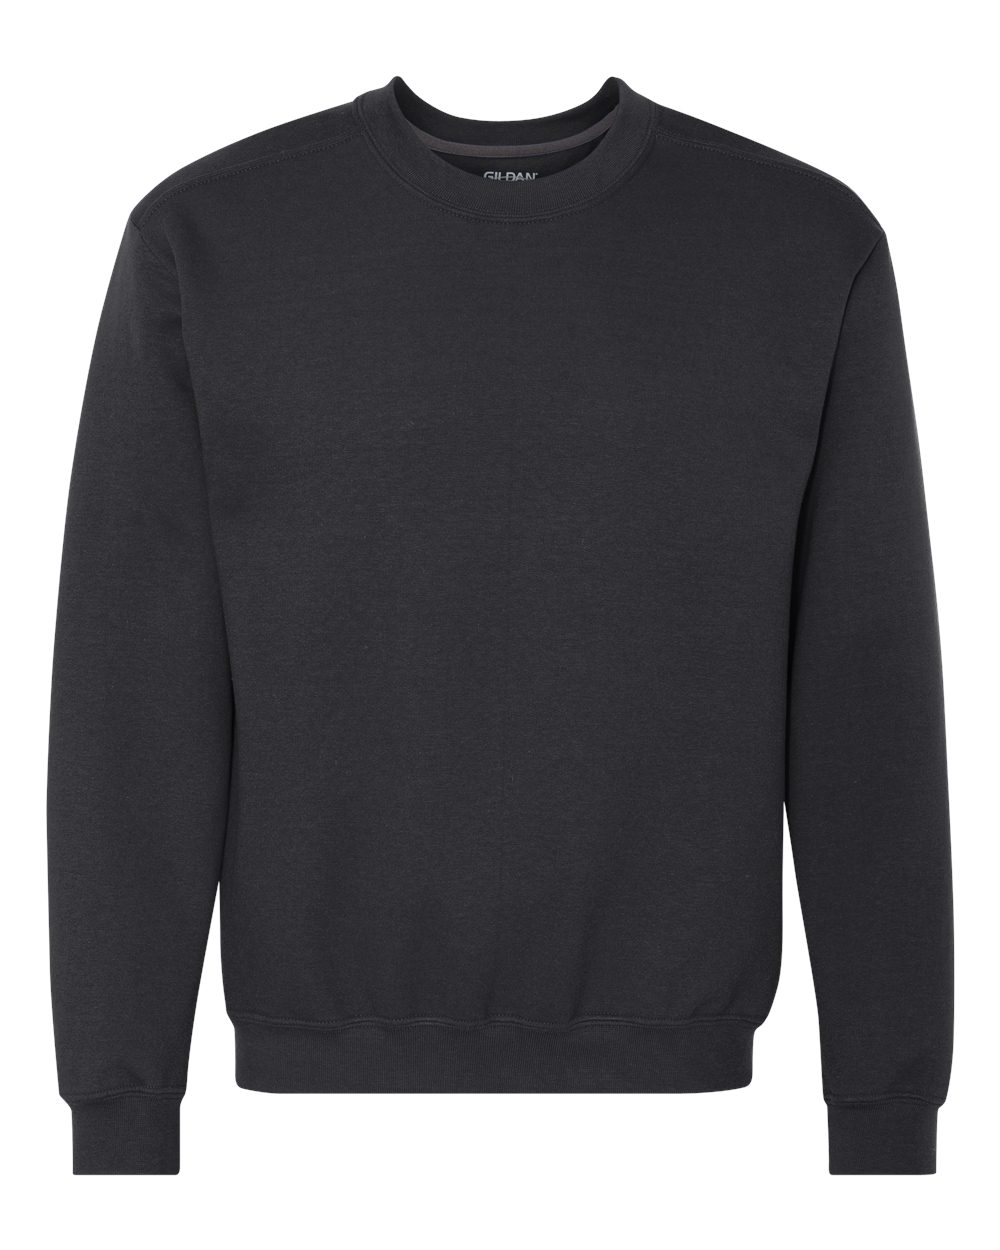 Gildan 92000 - Adult Premium Cotton Crew Neck Sweatshirt